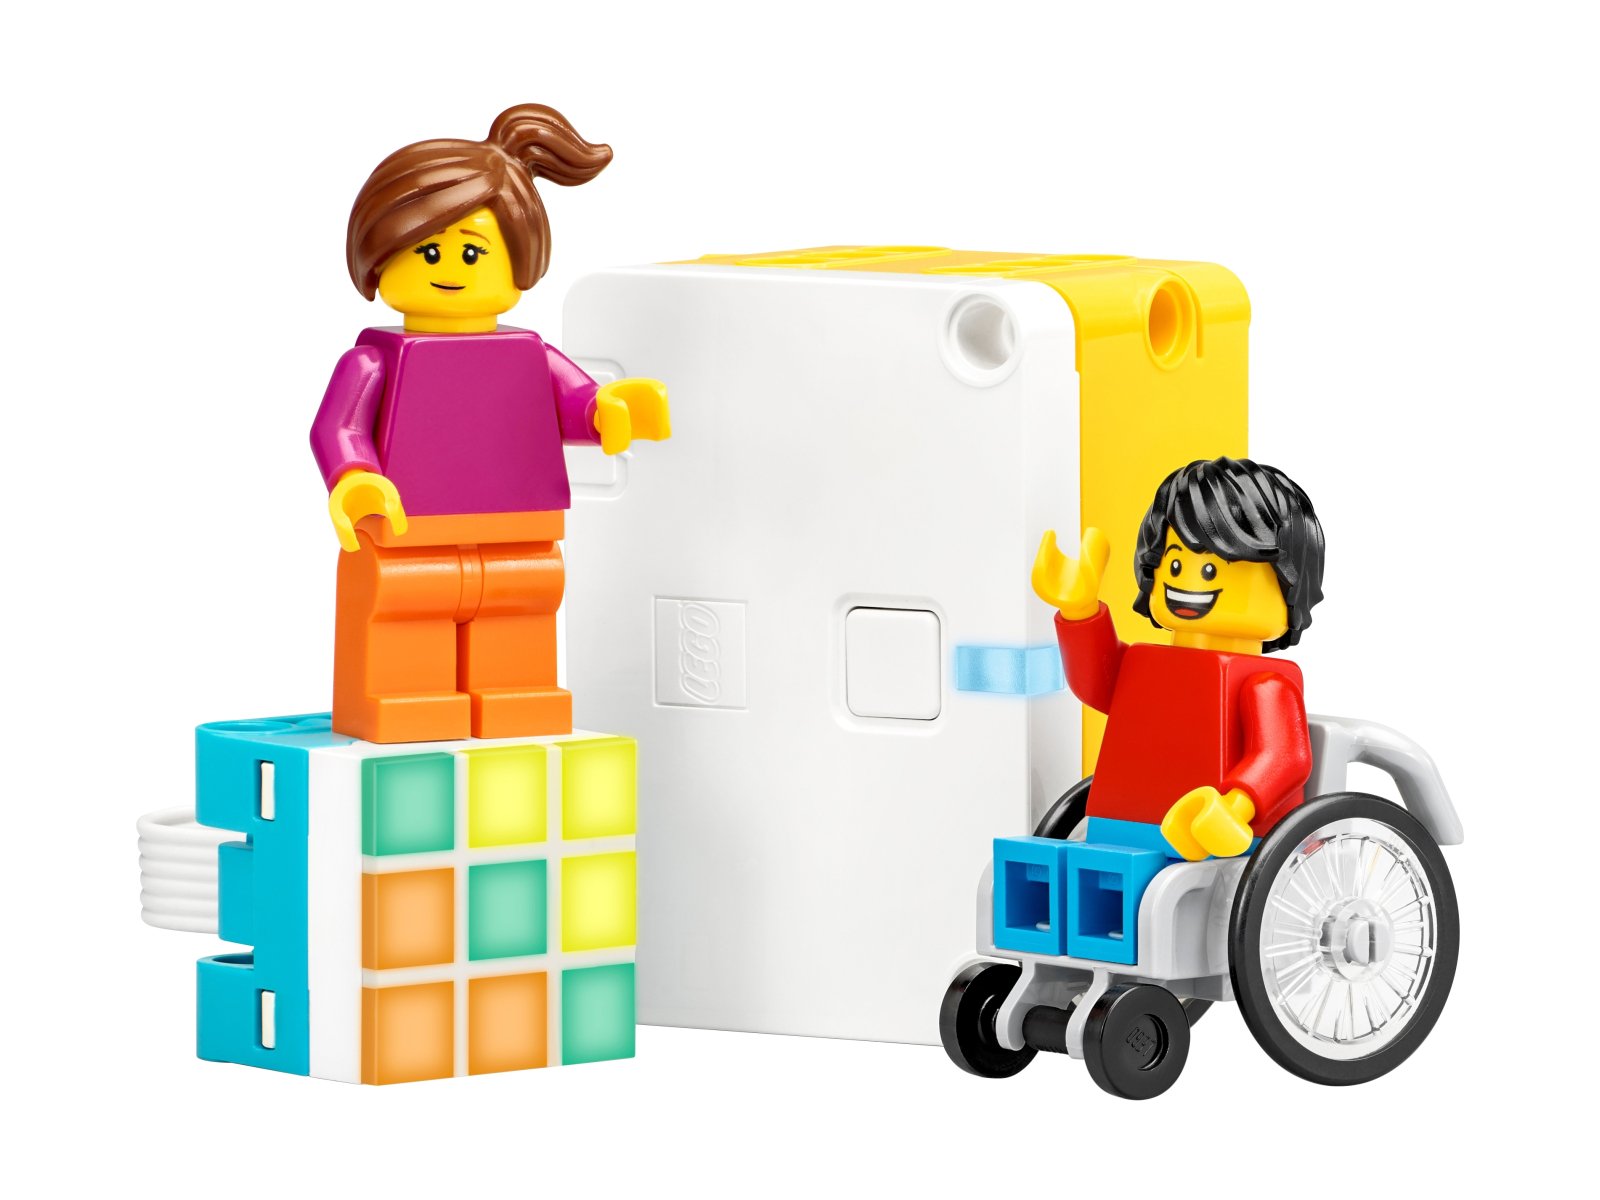 LEGO 45345 Education SPIKE™ Essential